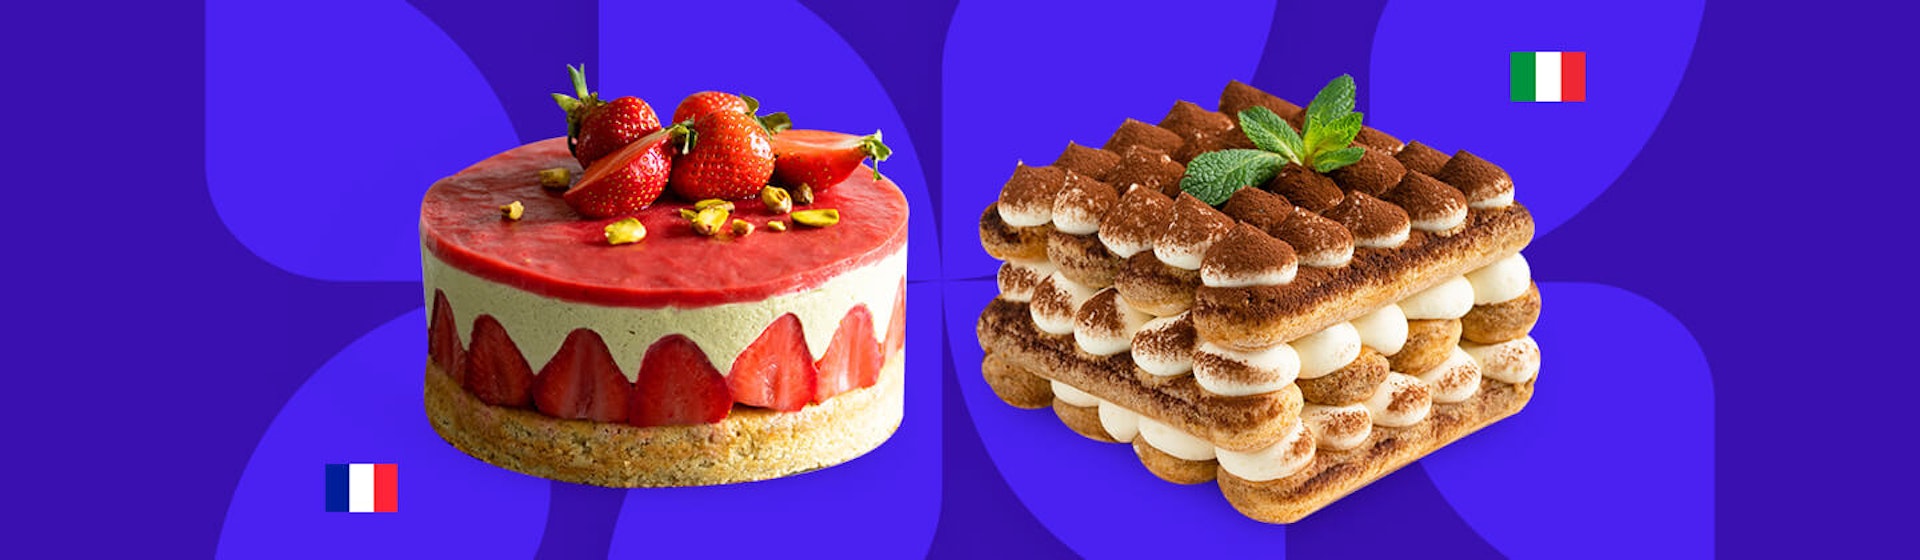 ¿Cuál es la diferencia entre la pastelería italiana y la pastelería francesa?